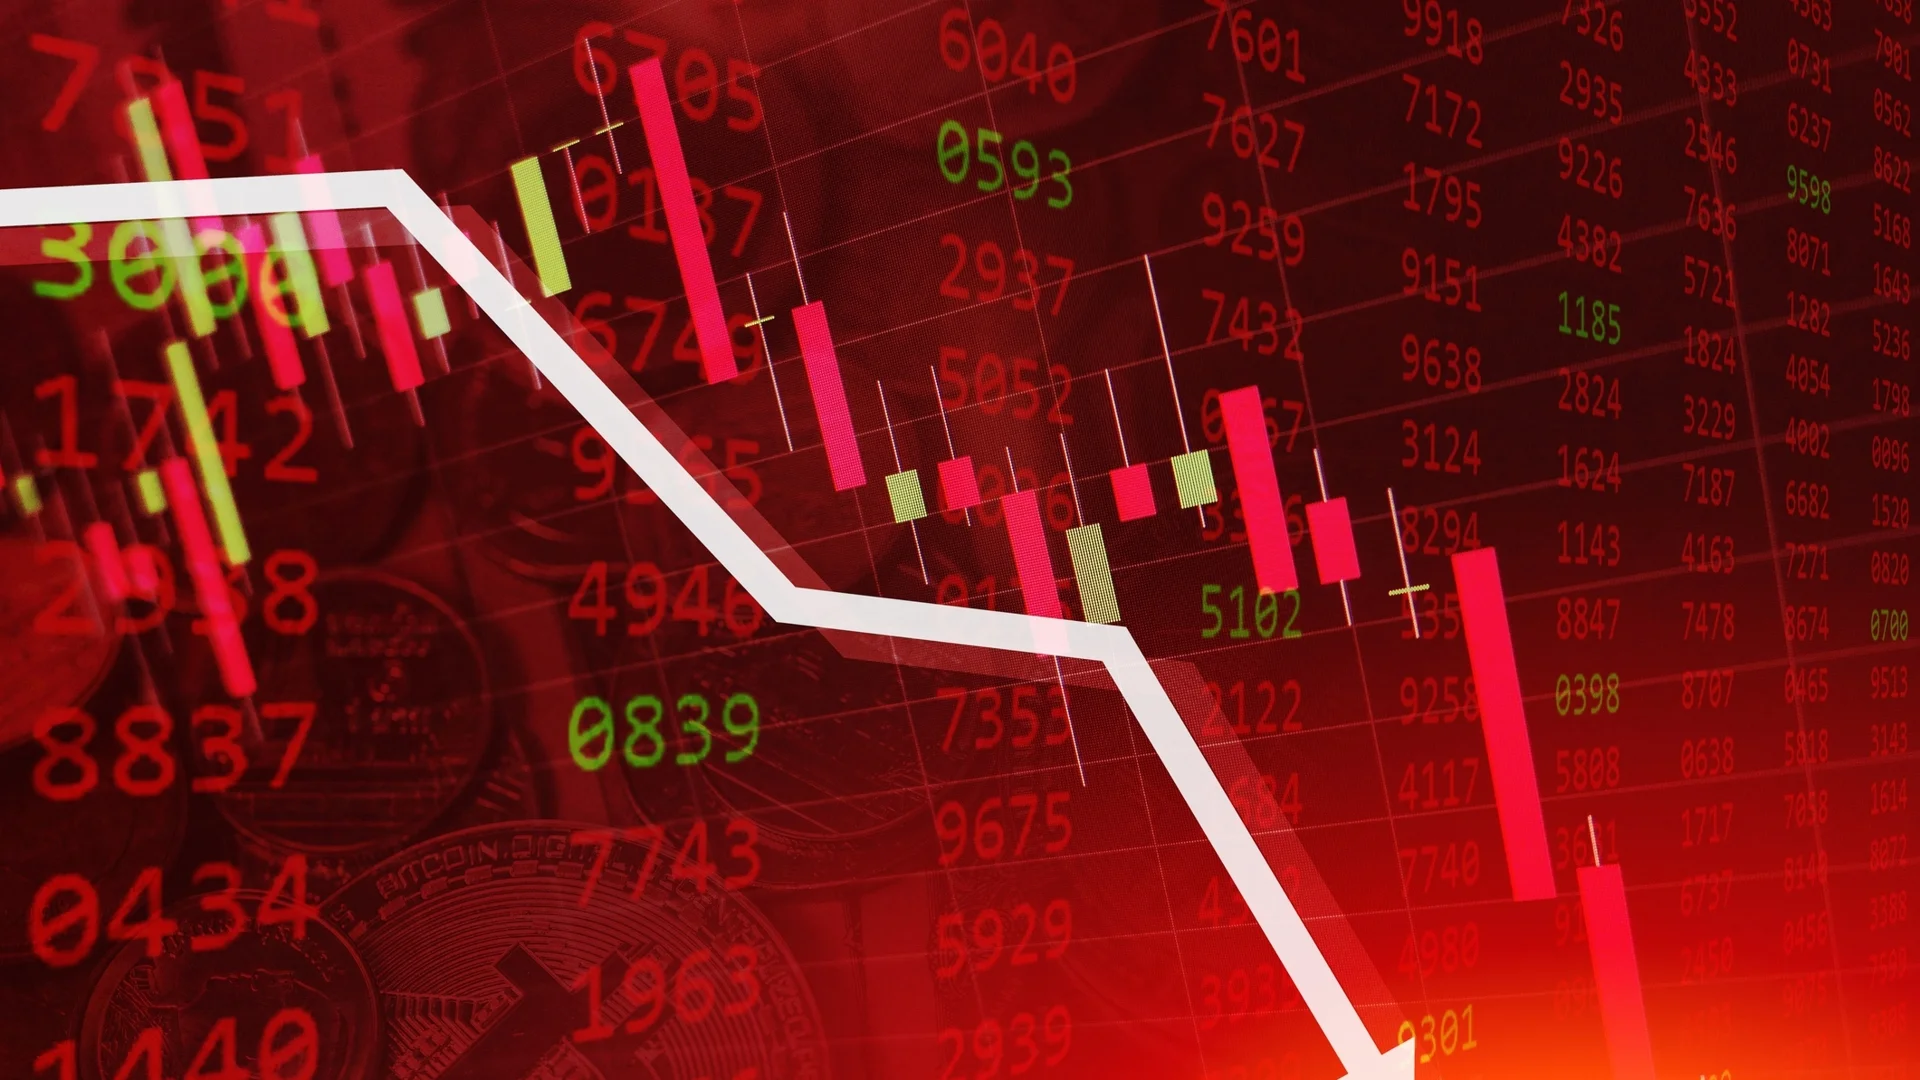 Лоши новини: Загубите преобладават на европейските фондови пазари 